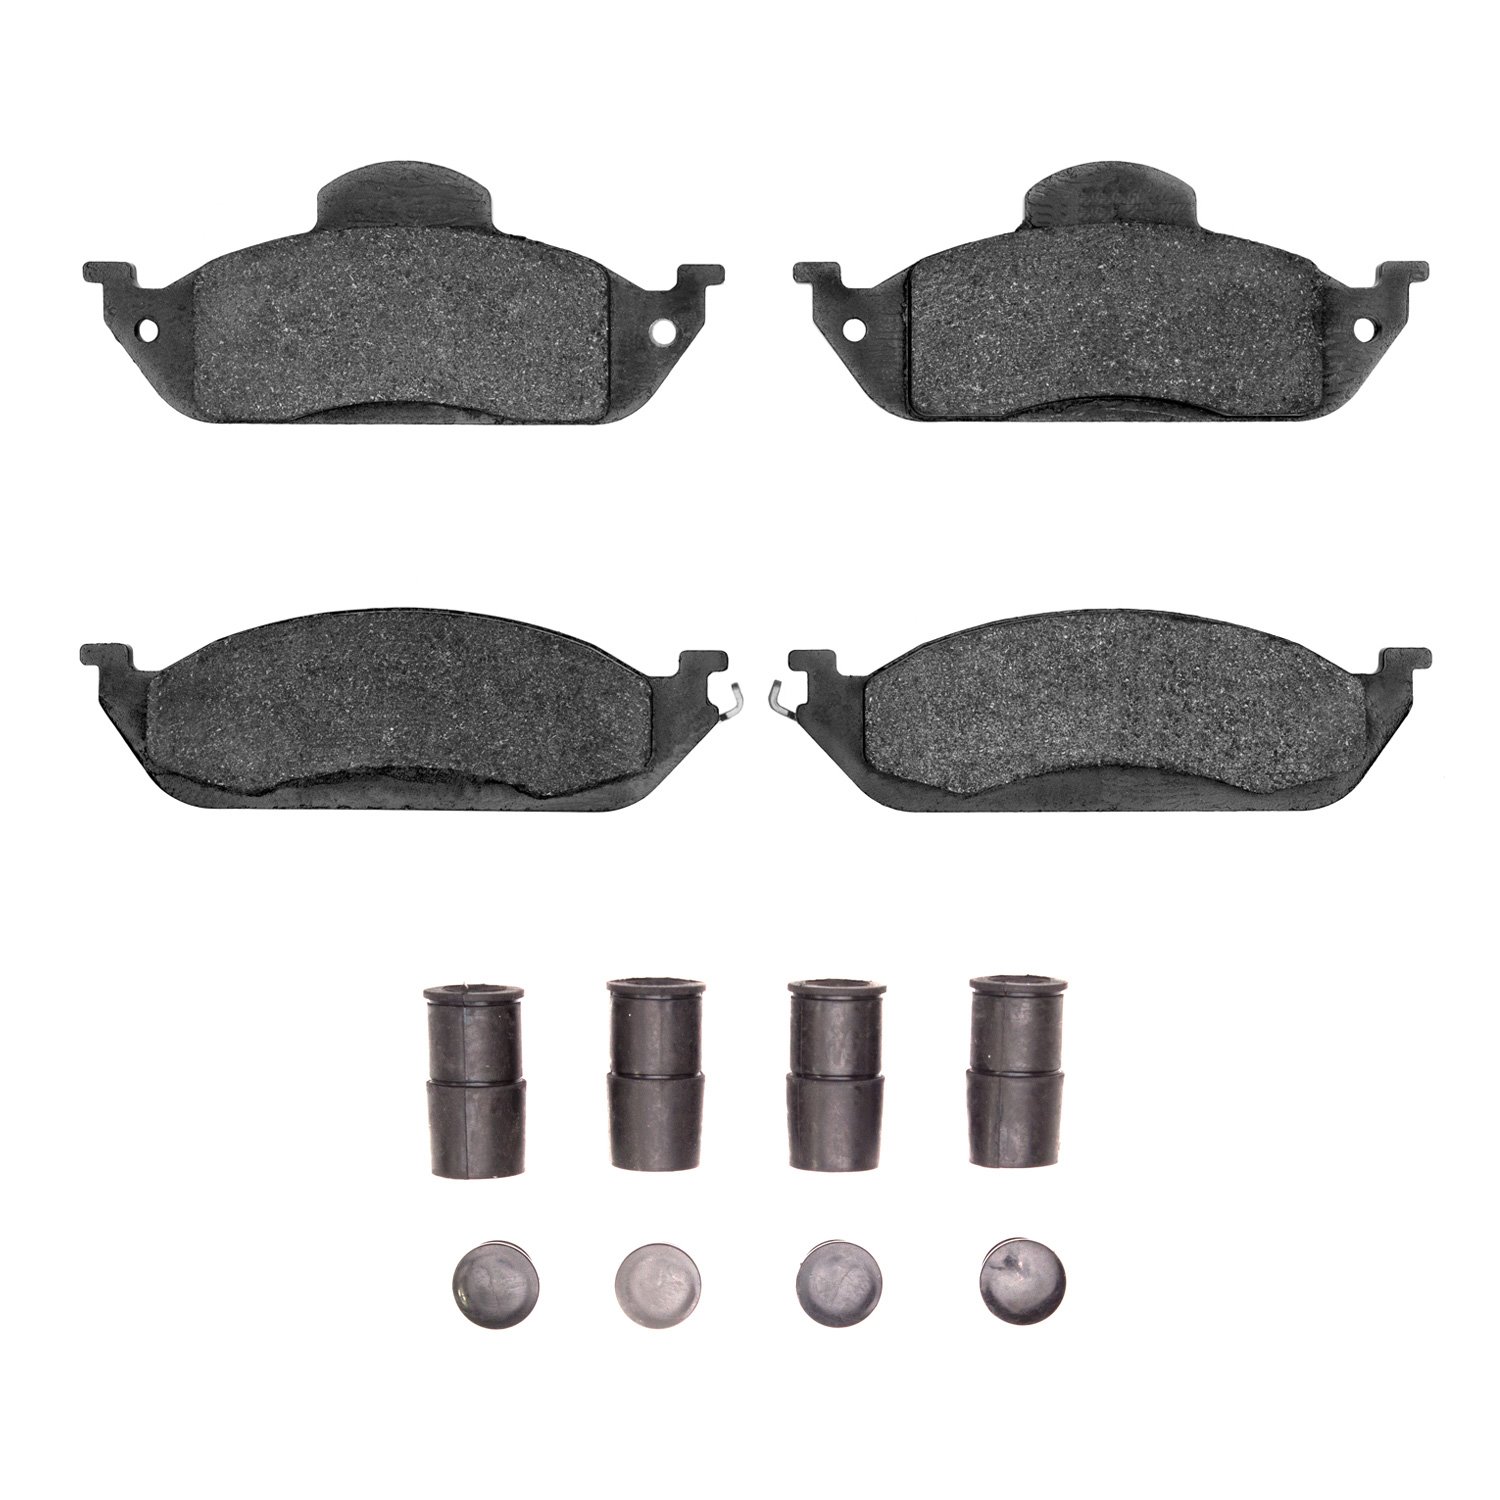 1311-0760-01 3000-Series Semi-Metallic Brake Pads & Hardware Kit, 1998-2005 Mercedes-Benz, Position: Front